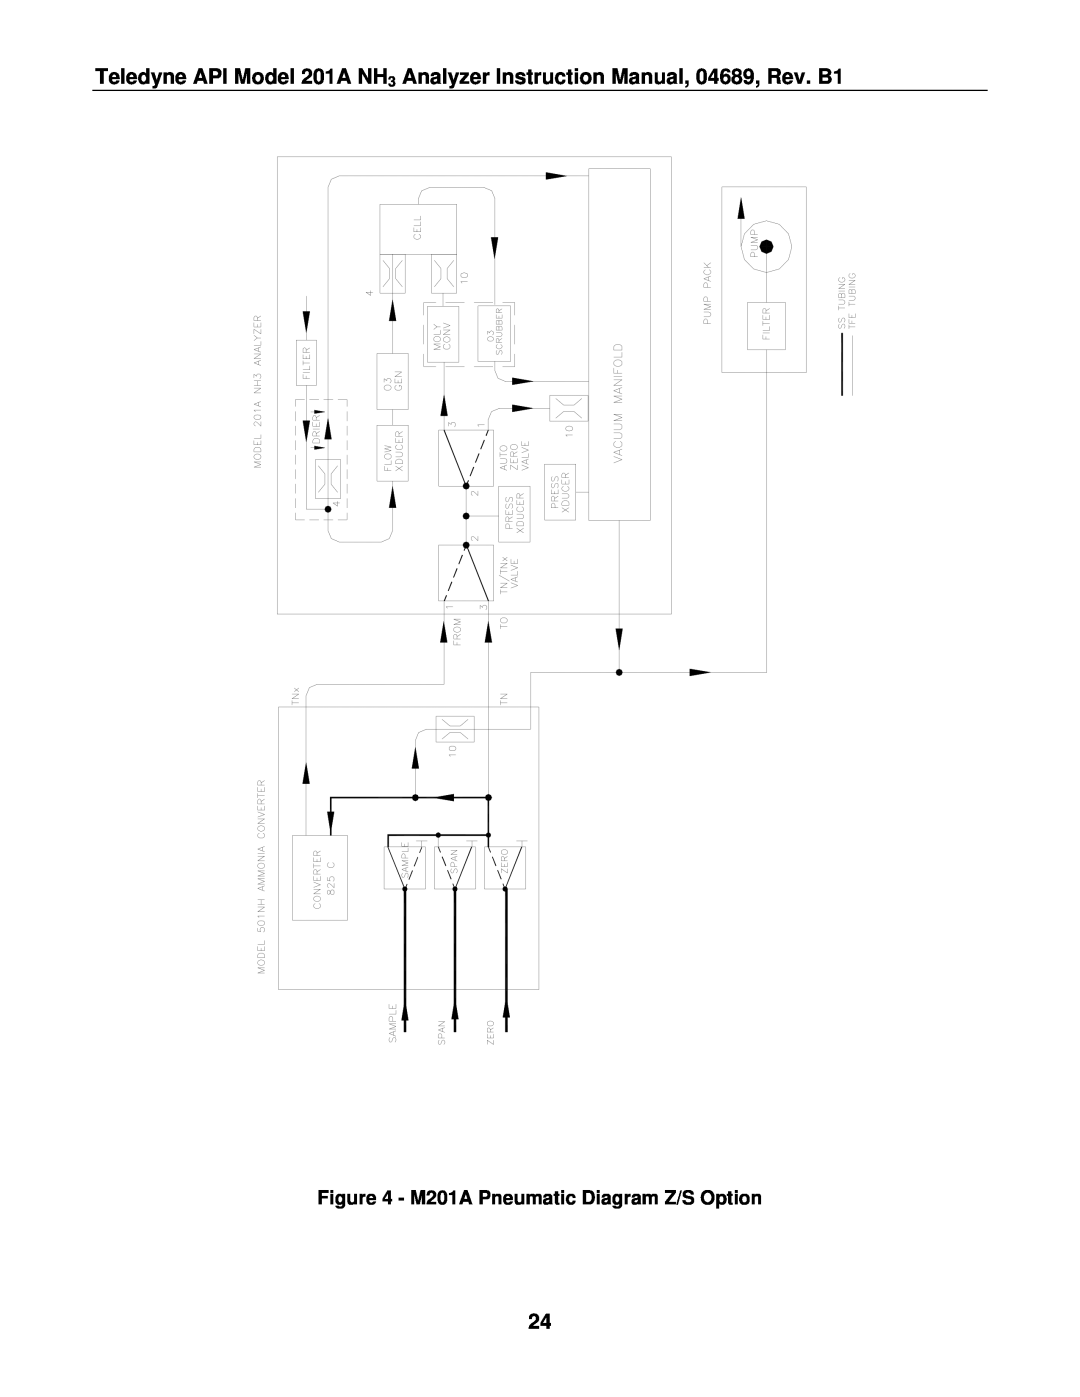 Teledyne manual M201A Pneumatic Diagram Z/S Option 